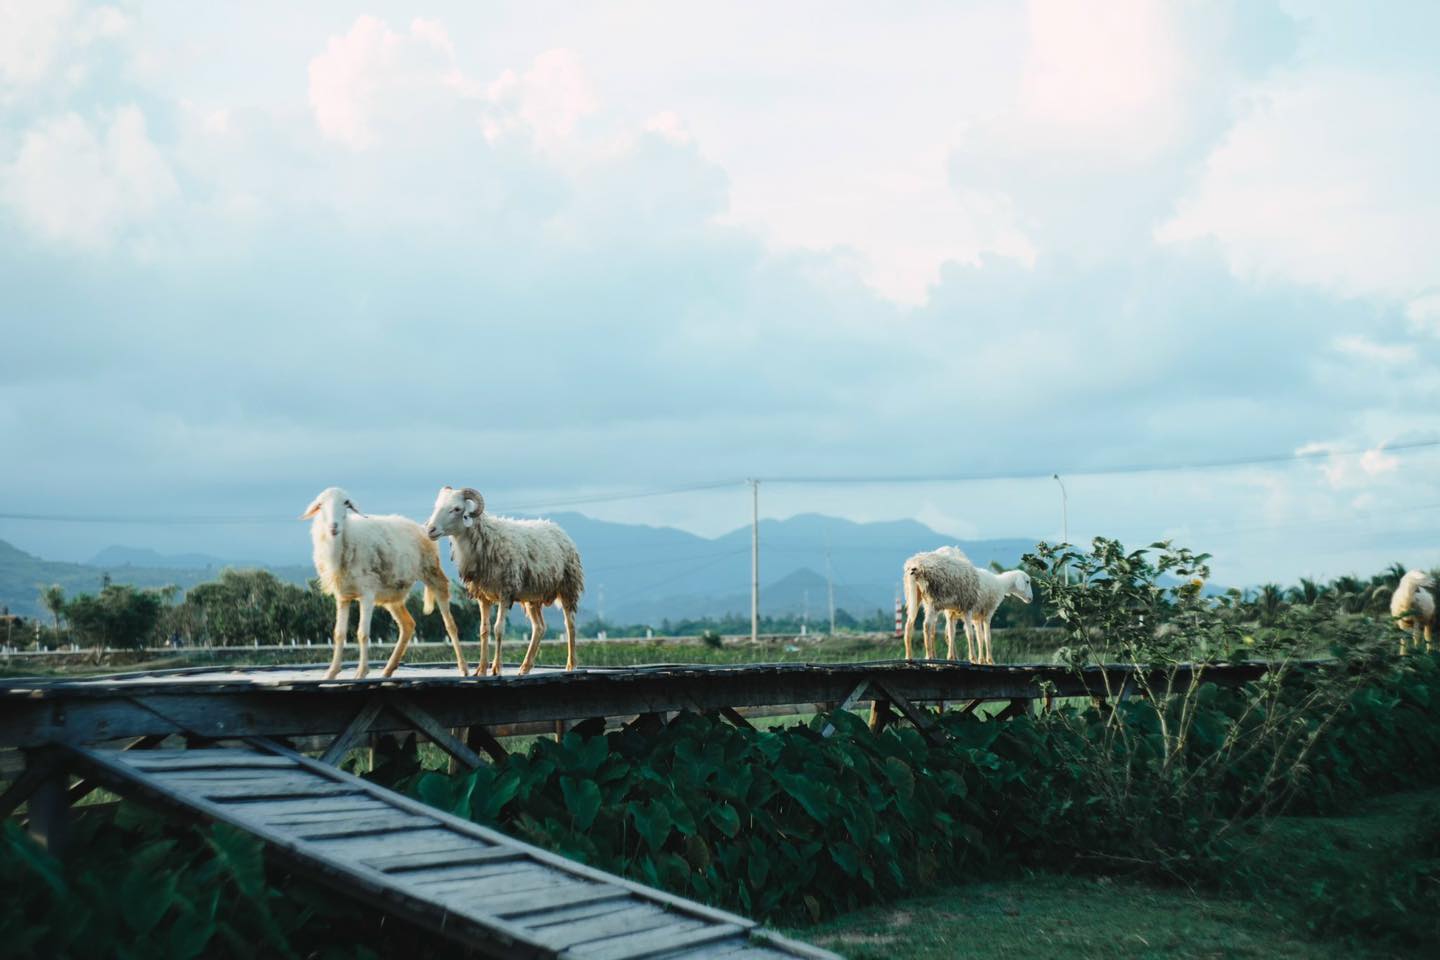 Đồng cừu được đầu tư với quy mô lớn và được điểm xuyết bởi những tiểu cảnh khá đẹp mắt